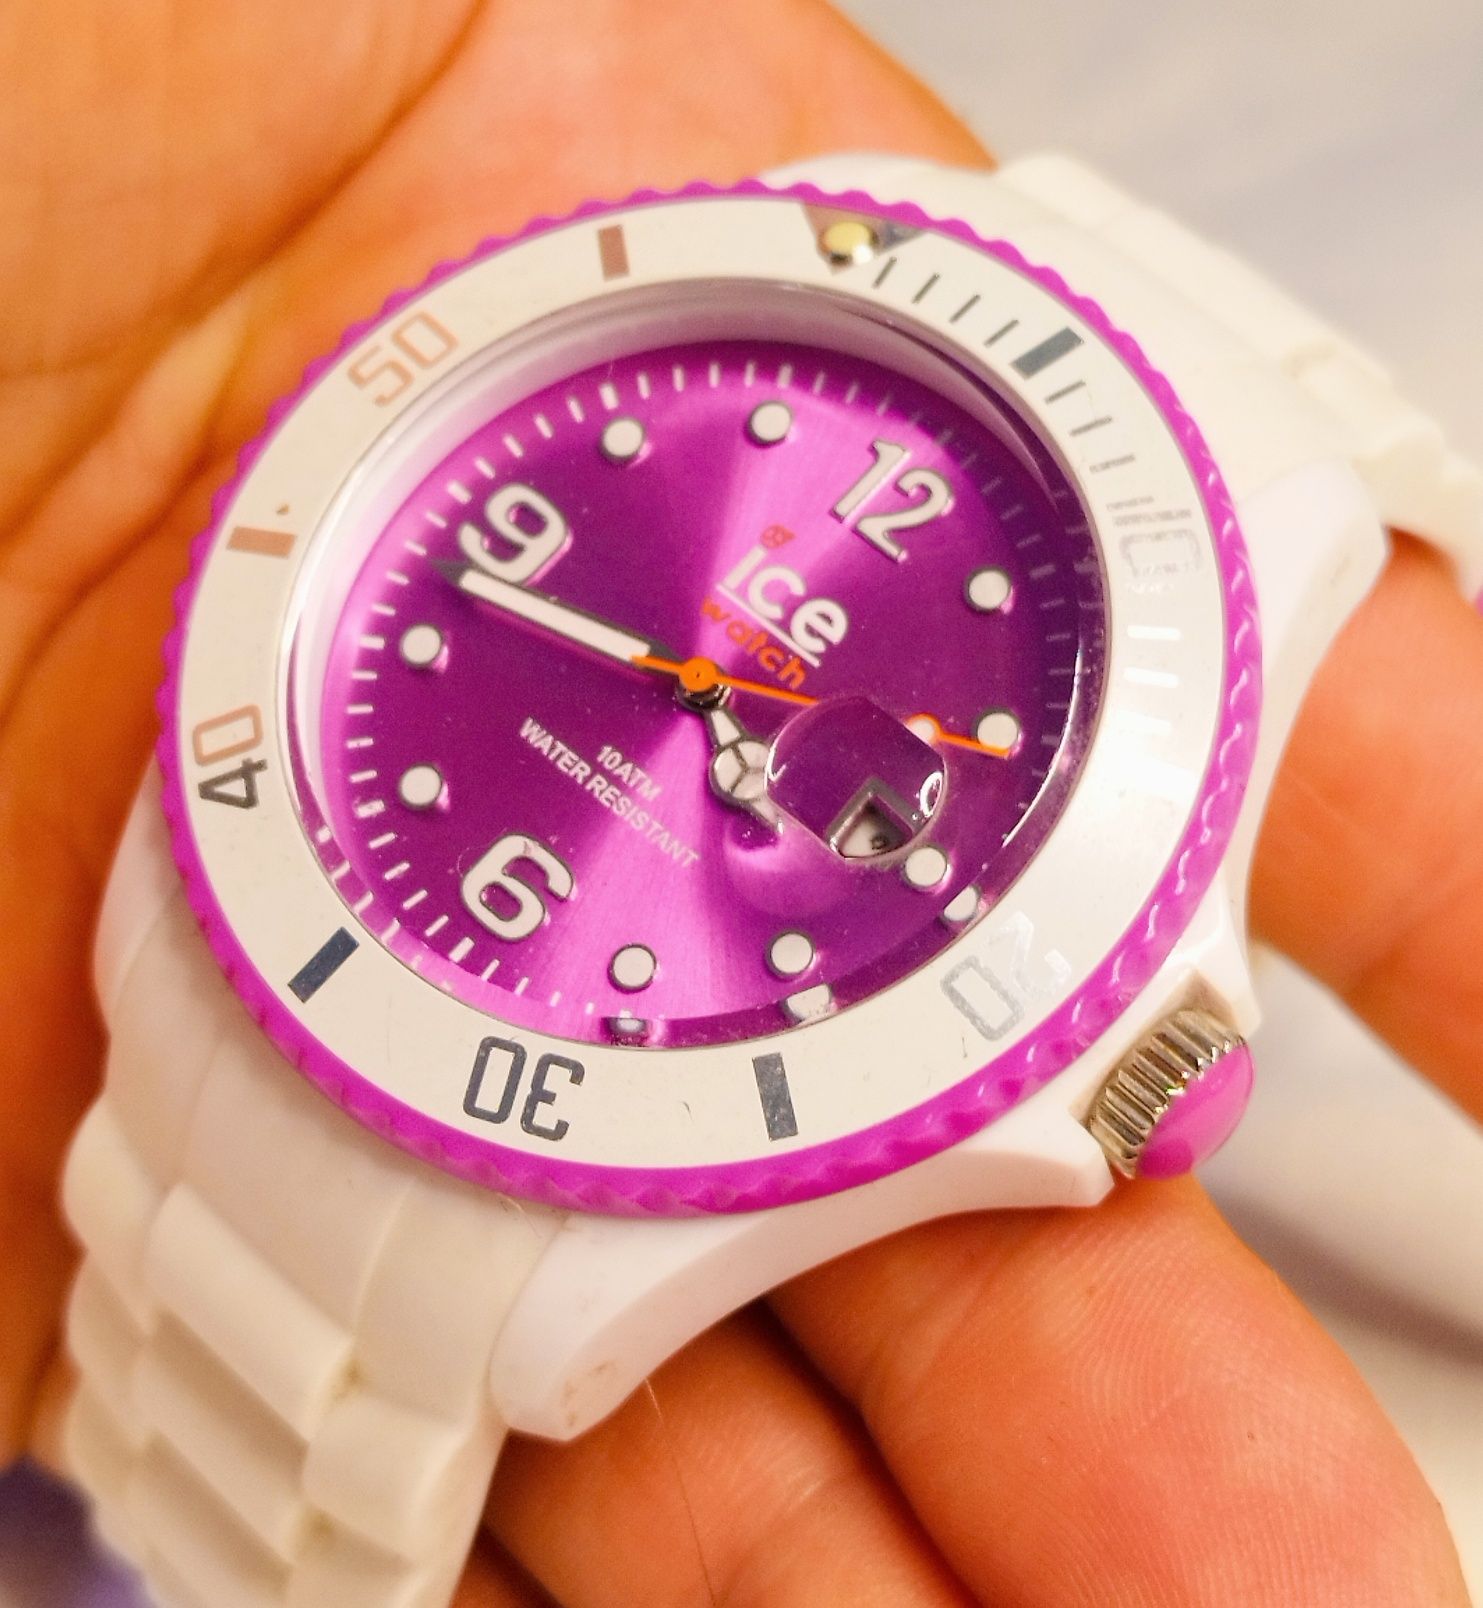 Ceas de damă Ice Original alb/purpuriu, SI.WV.S.S.1, cu quartz si dată